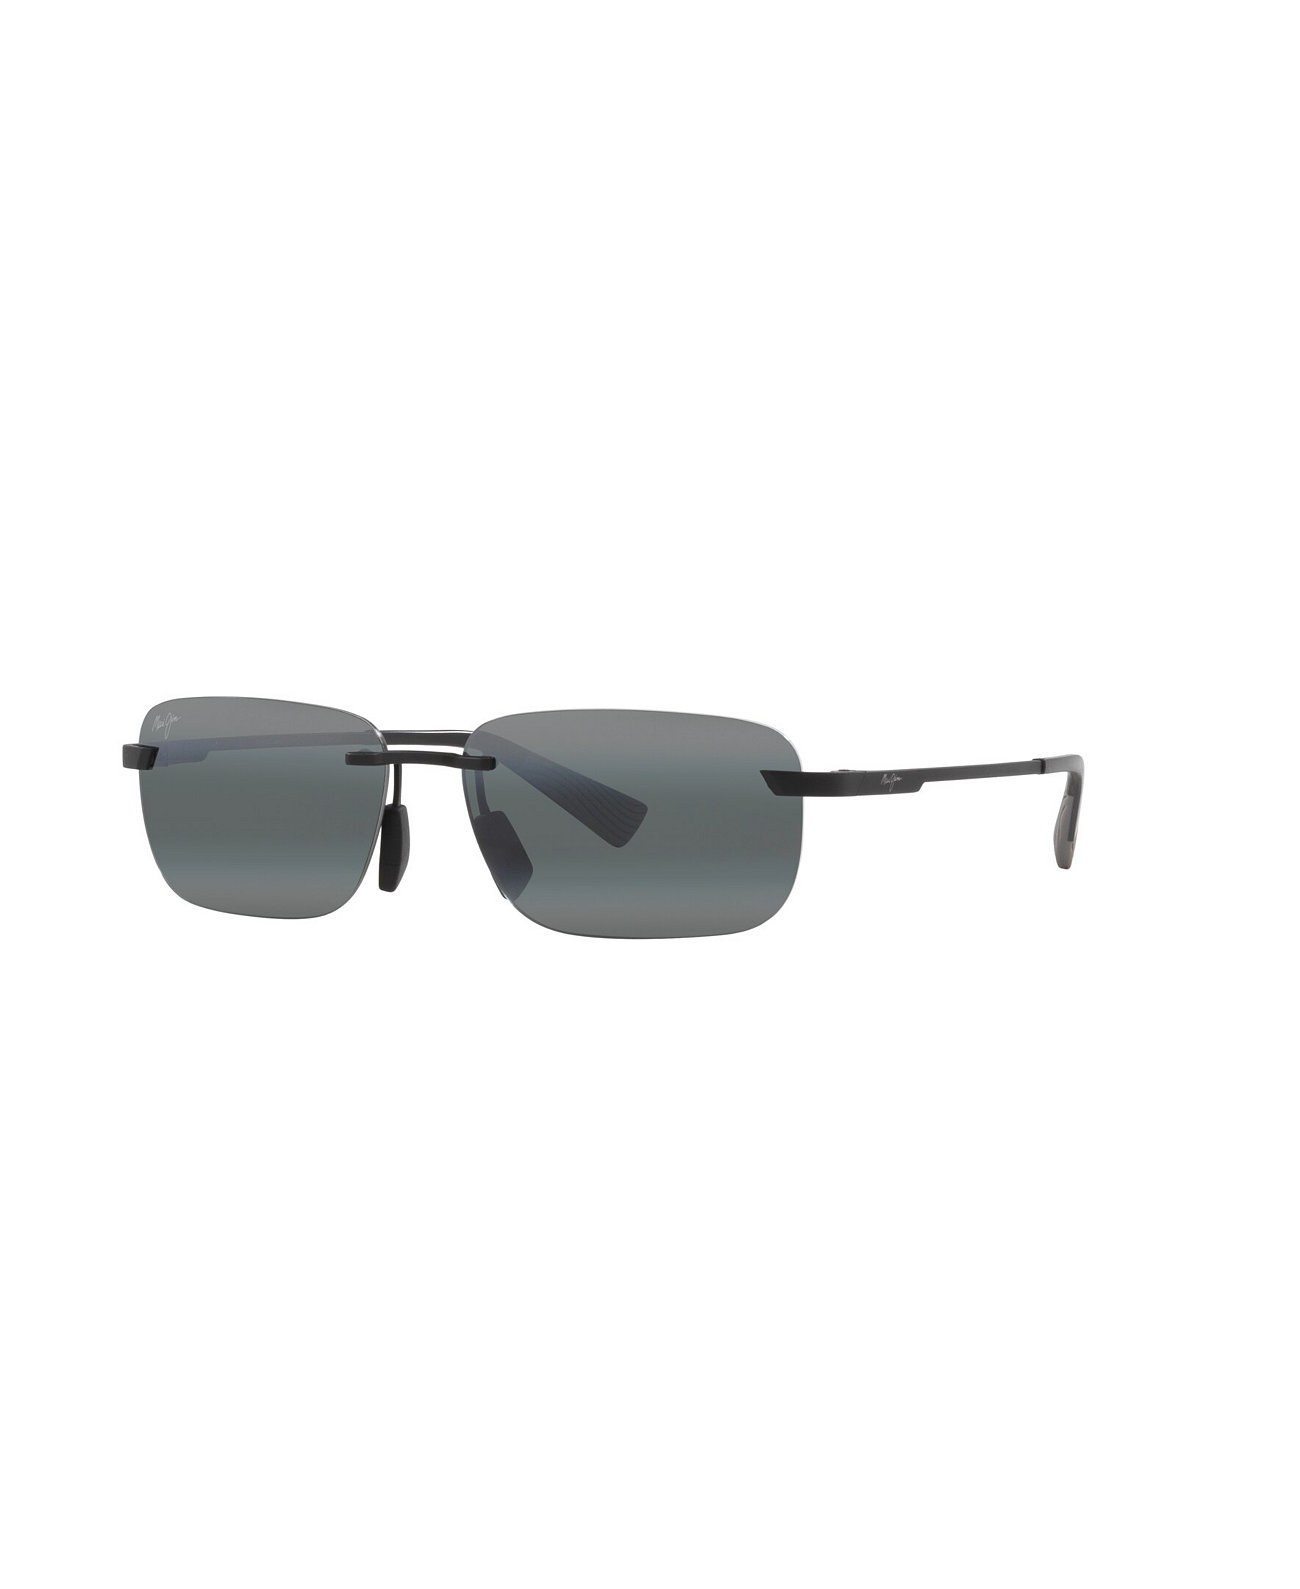 Men's Polarized Sunglasses, Lanakila Maui Jim